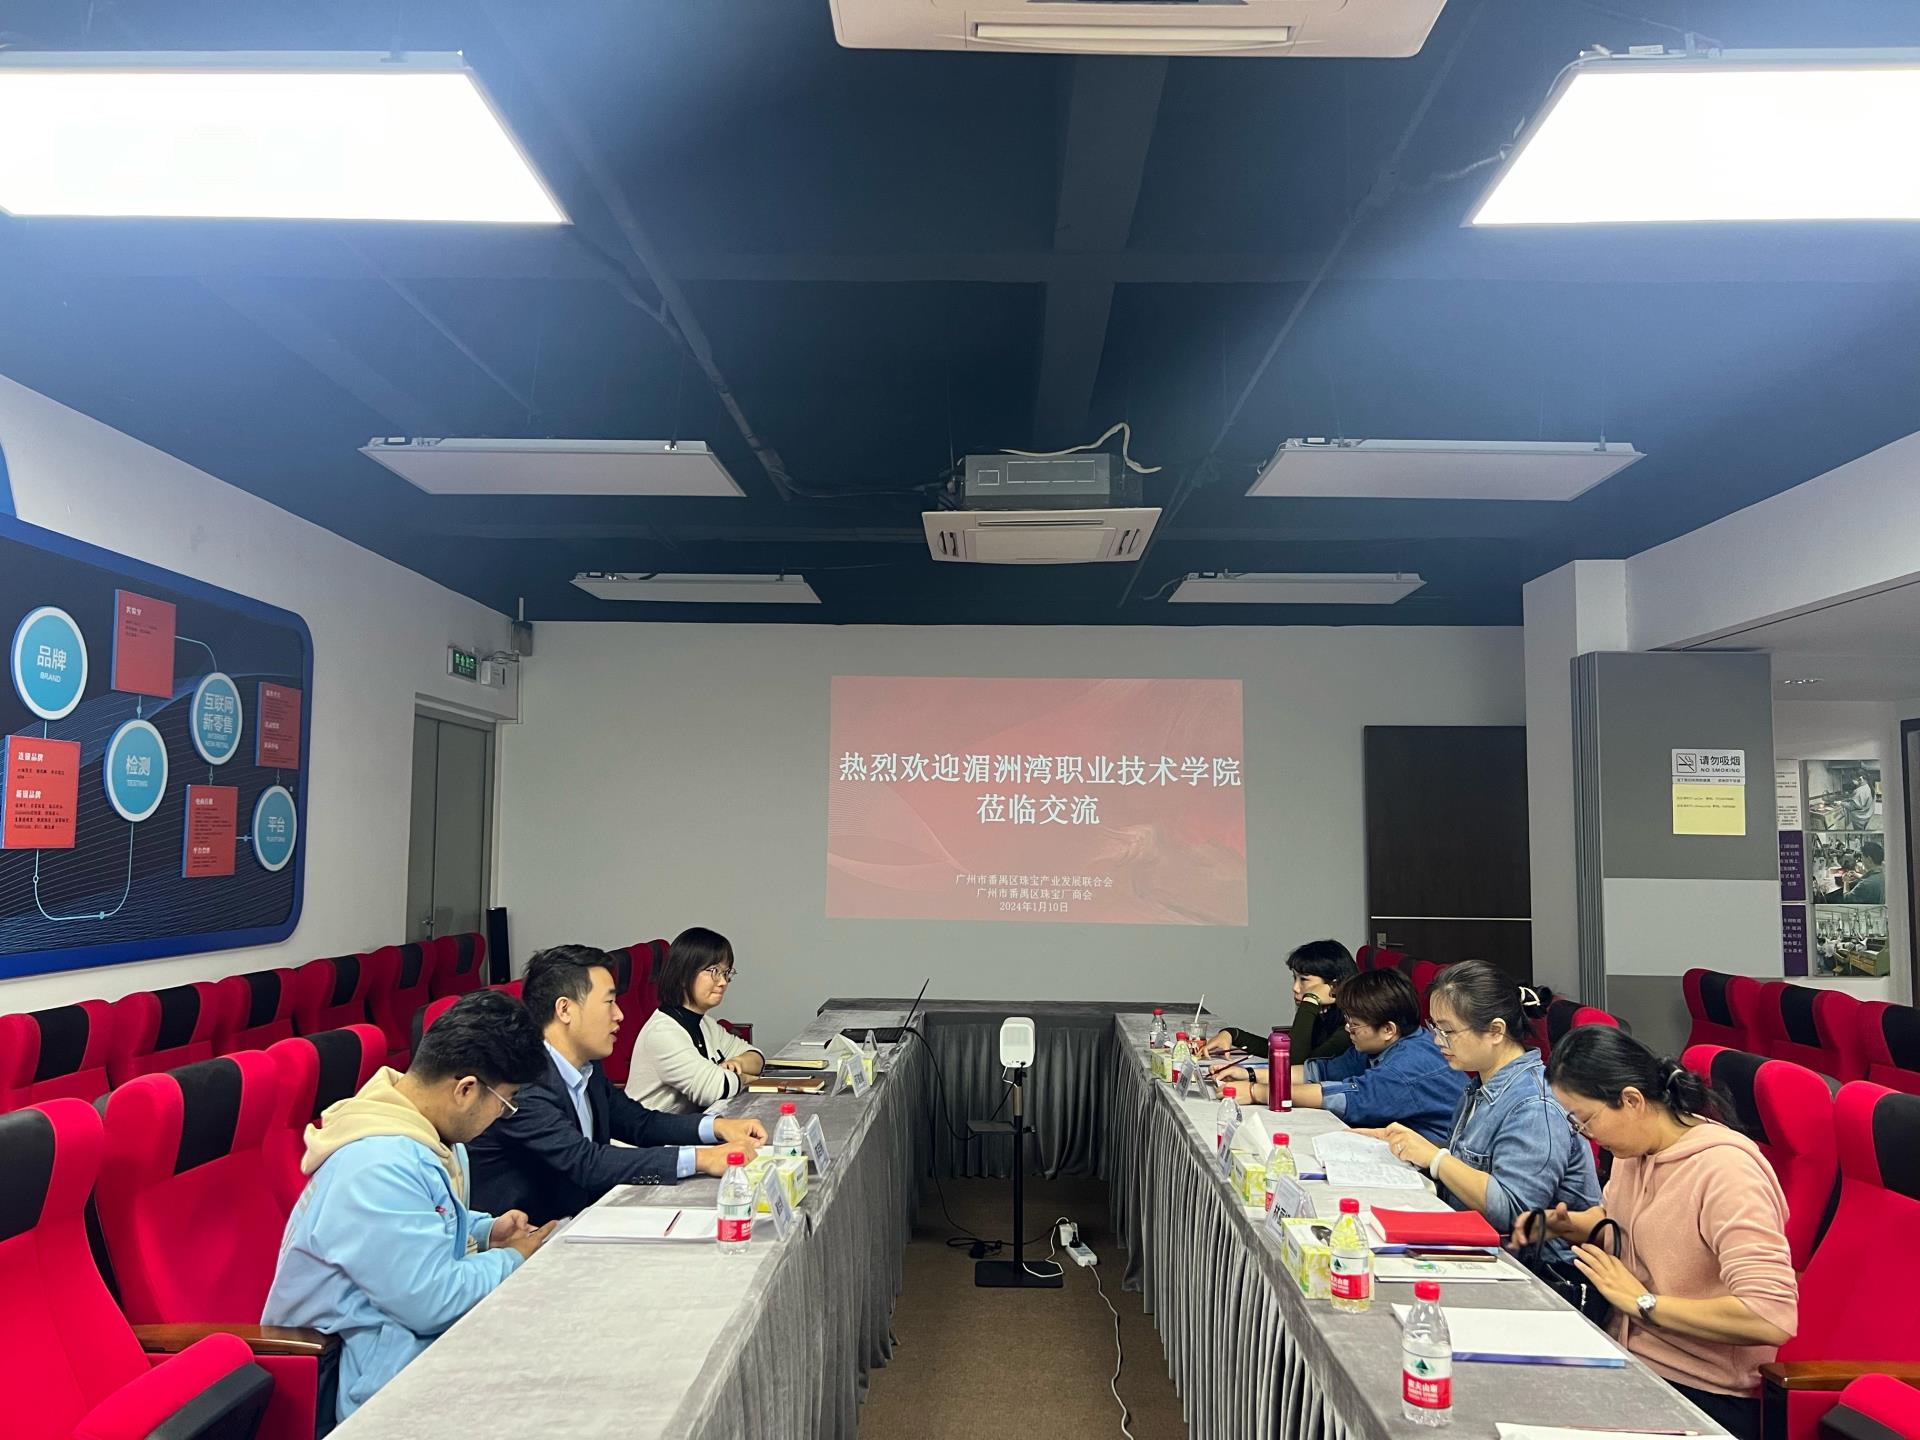 宝玉石鉴定与加工专业教学团队走访广州番禺珠宝厂商会进行调研活动